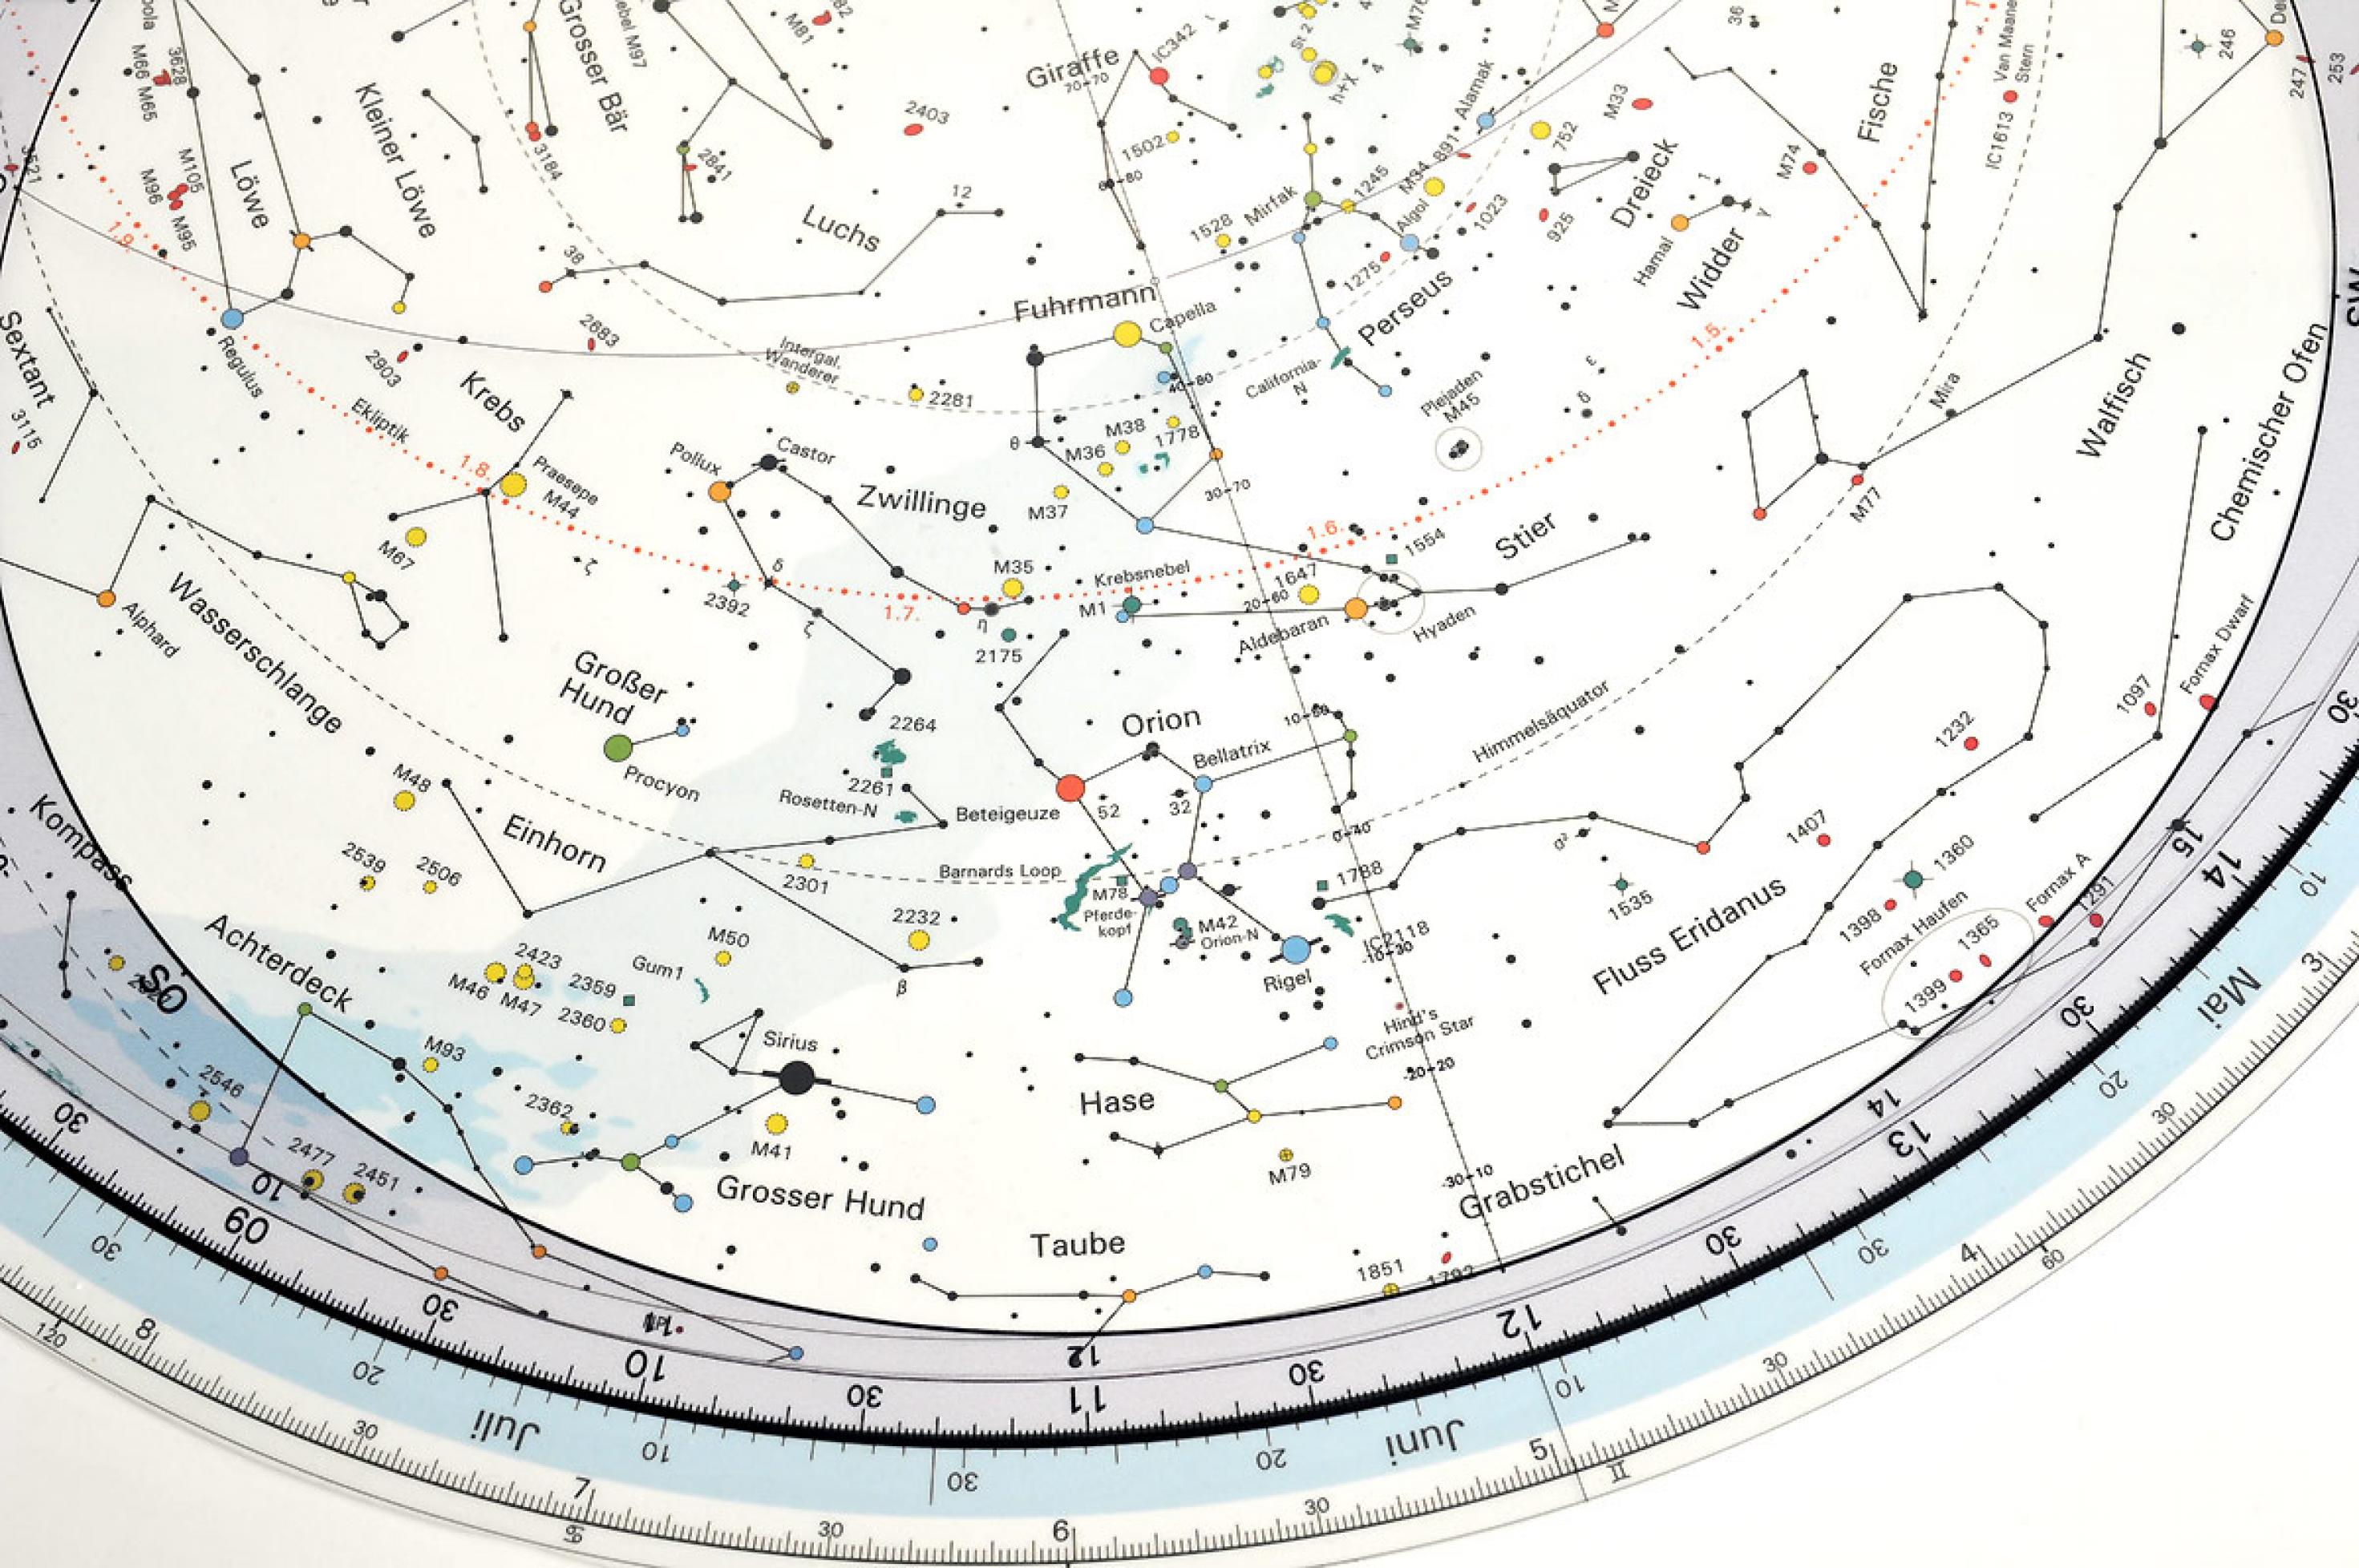 Eine drehbare Sternkarte mit besonders großem Maßstab, die viele Details und kleinere Himmelsobjekte zeigt.